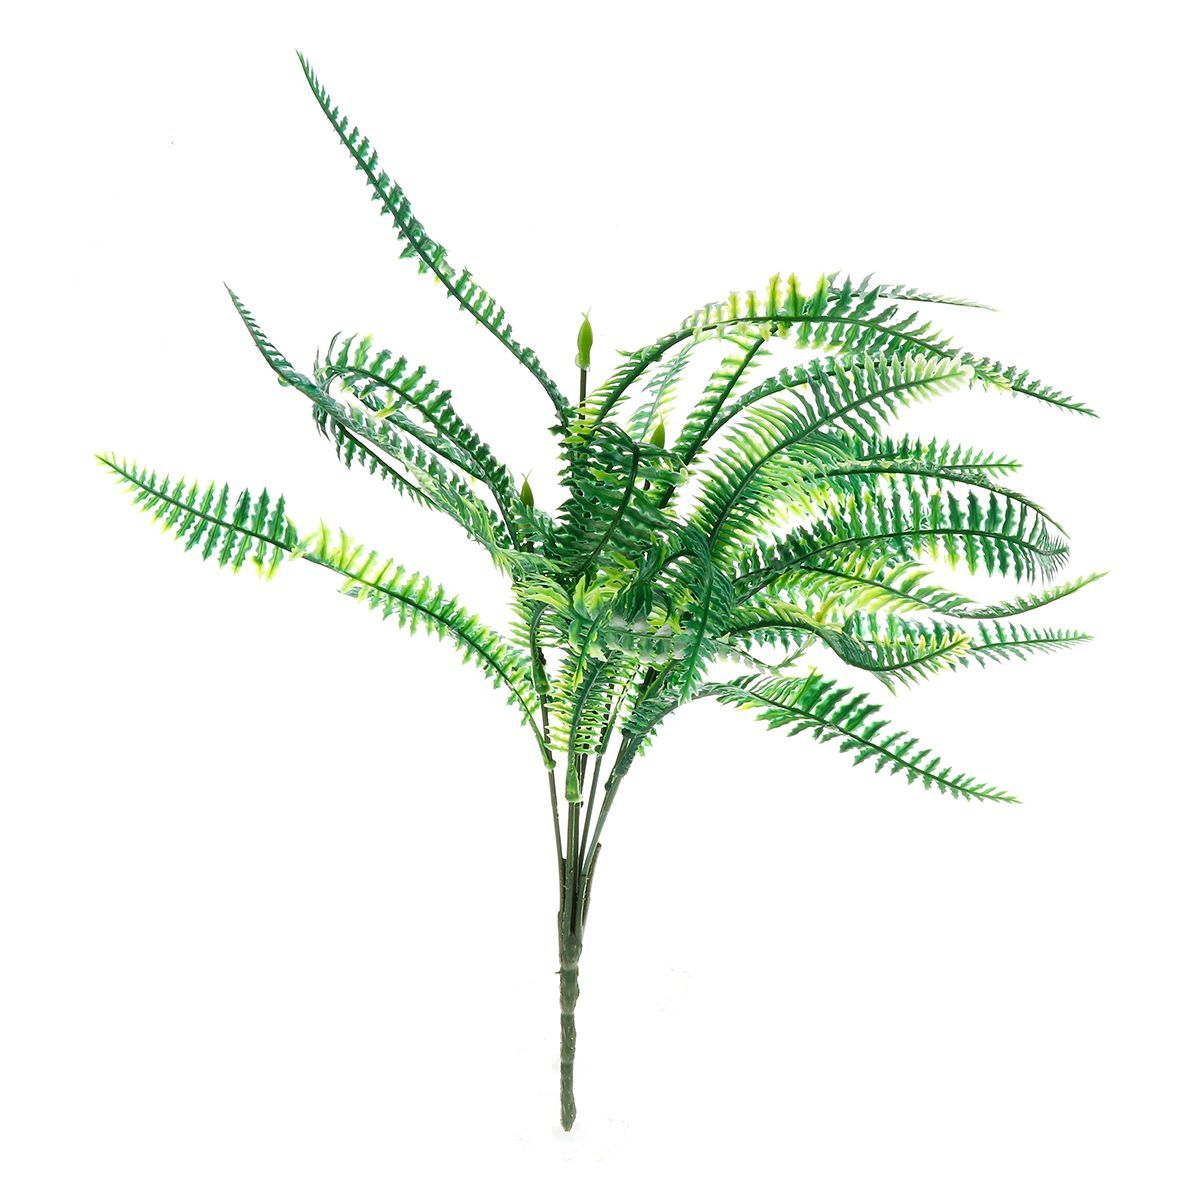 Simulation-Persian-Leaf-Grass-Plant-Wall-Decoration-Lifelike-Artificial-Fern-Foliage-Bush-Plants-Ind-1718778